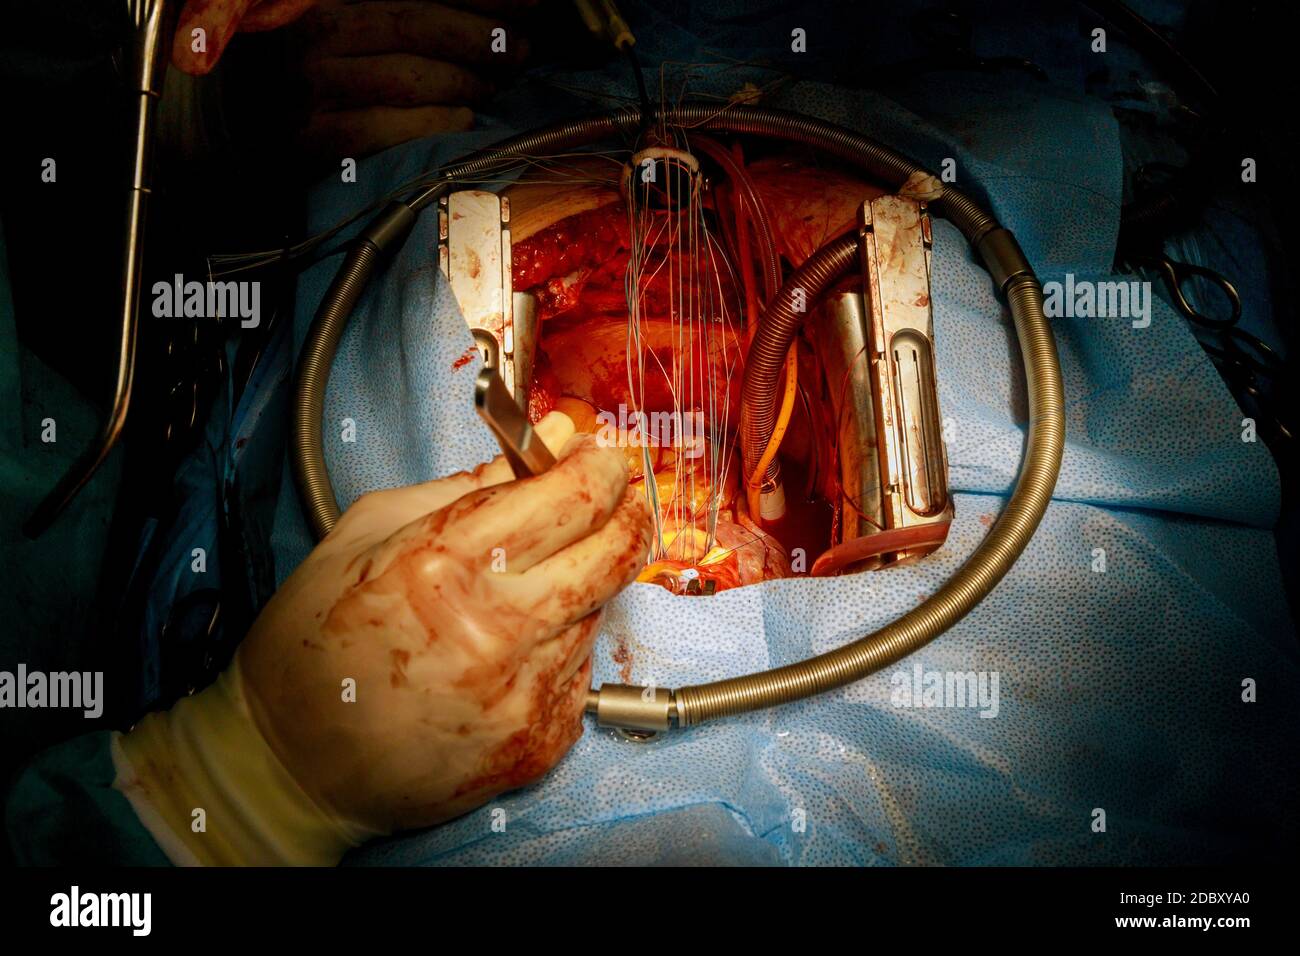 Intervento chirurgico a cuore aperto impianto aortico di sostituzione meccanica della valvola Foto Stock